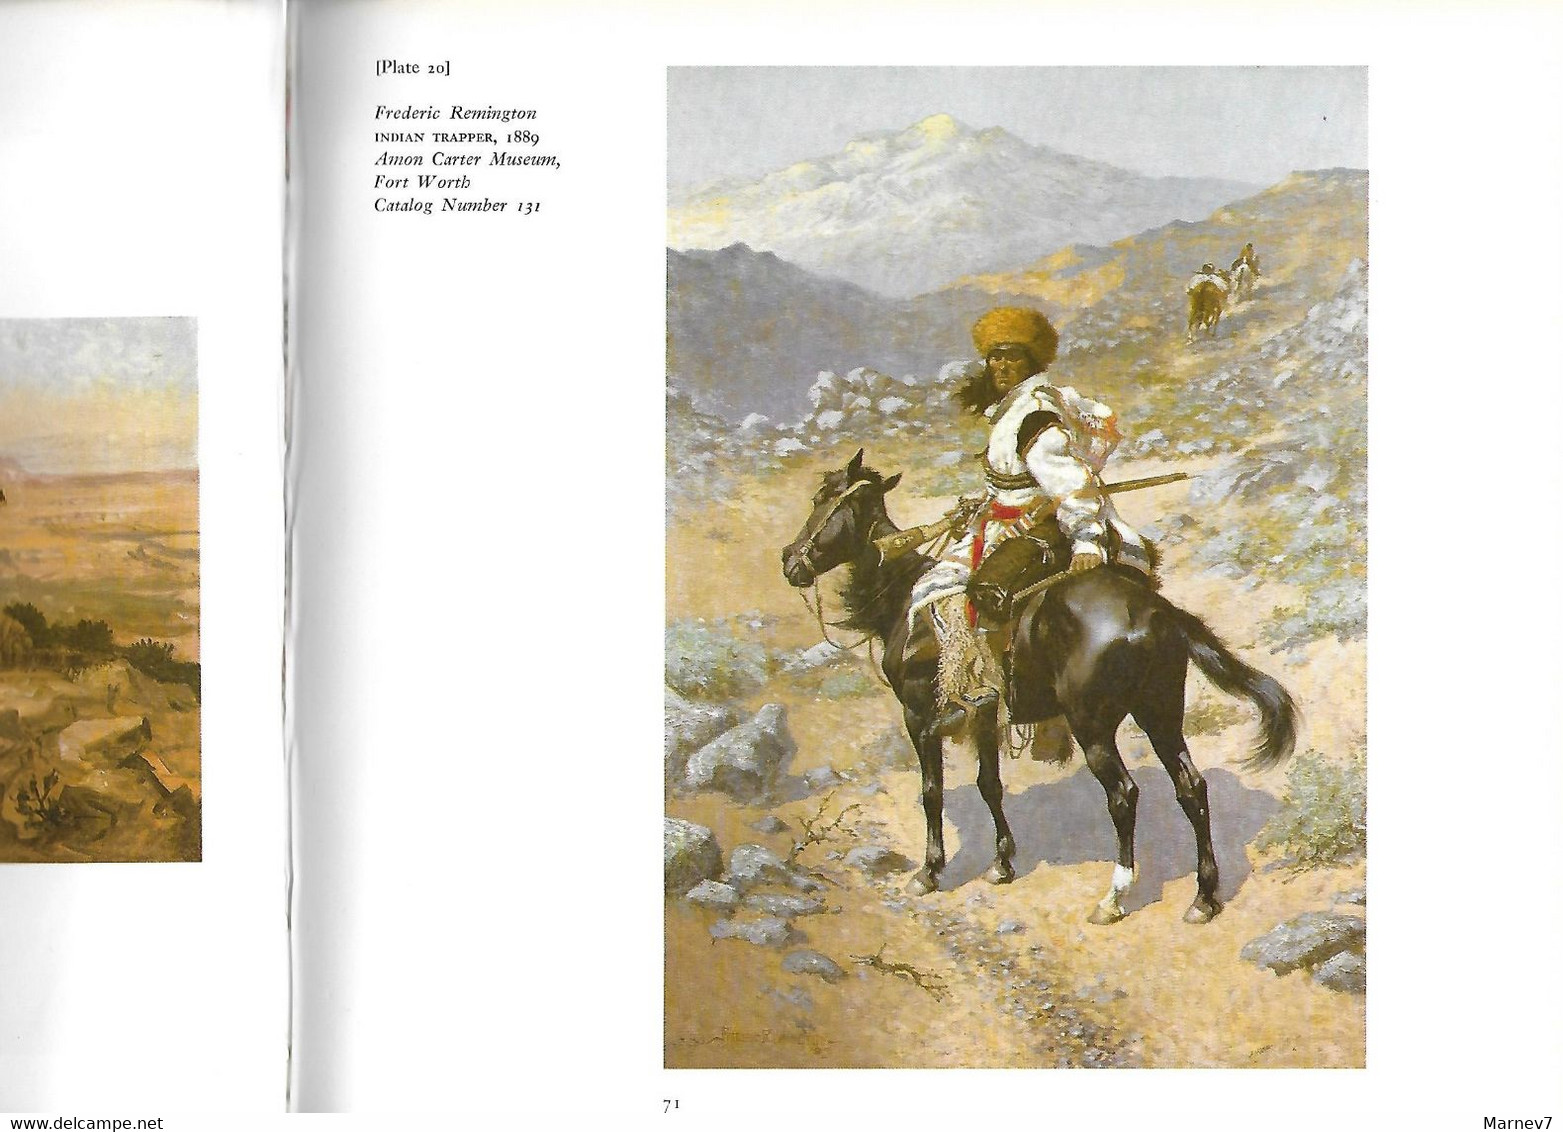 Livre En Anglais - The American West - L'Ouest Américain - Far West - USA - Peintres Catlin Remington Russel - - 1950-Now